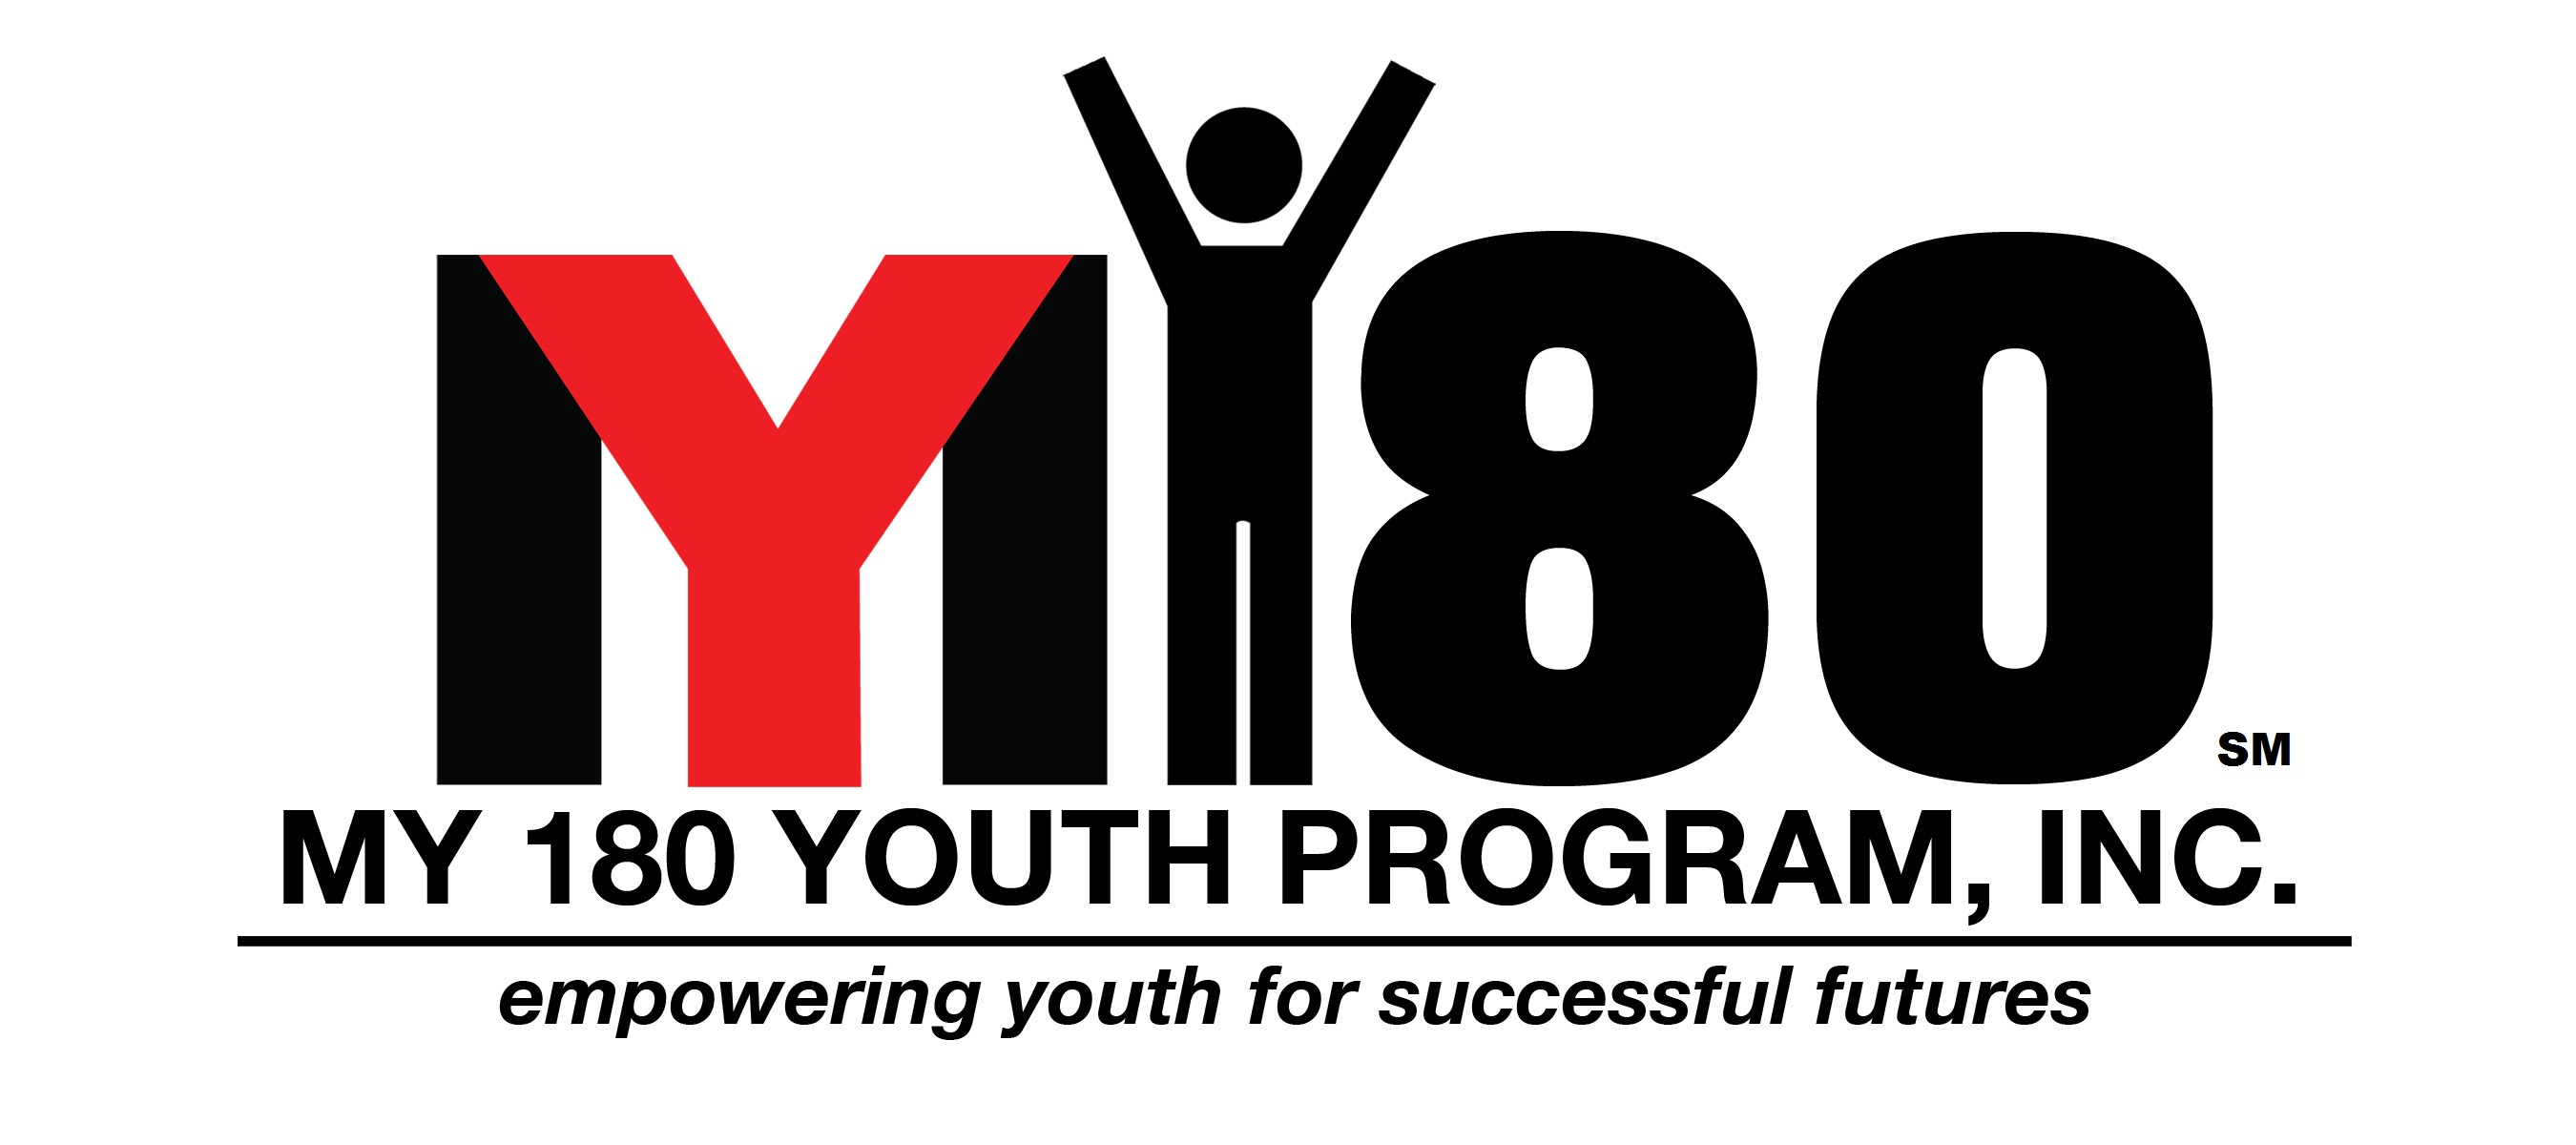 My 180 Youth Program logo